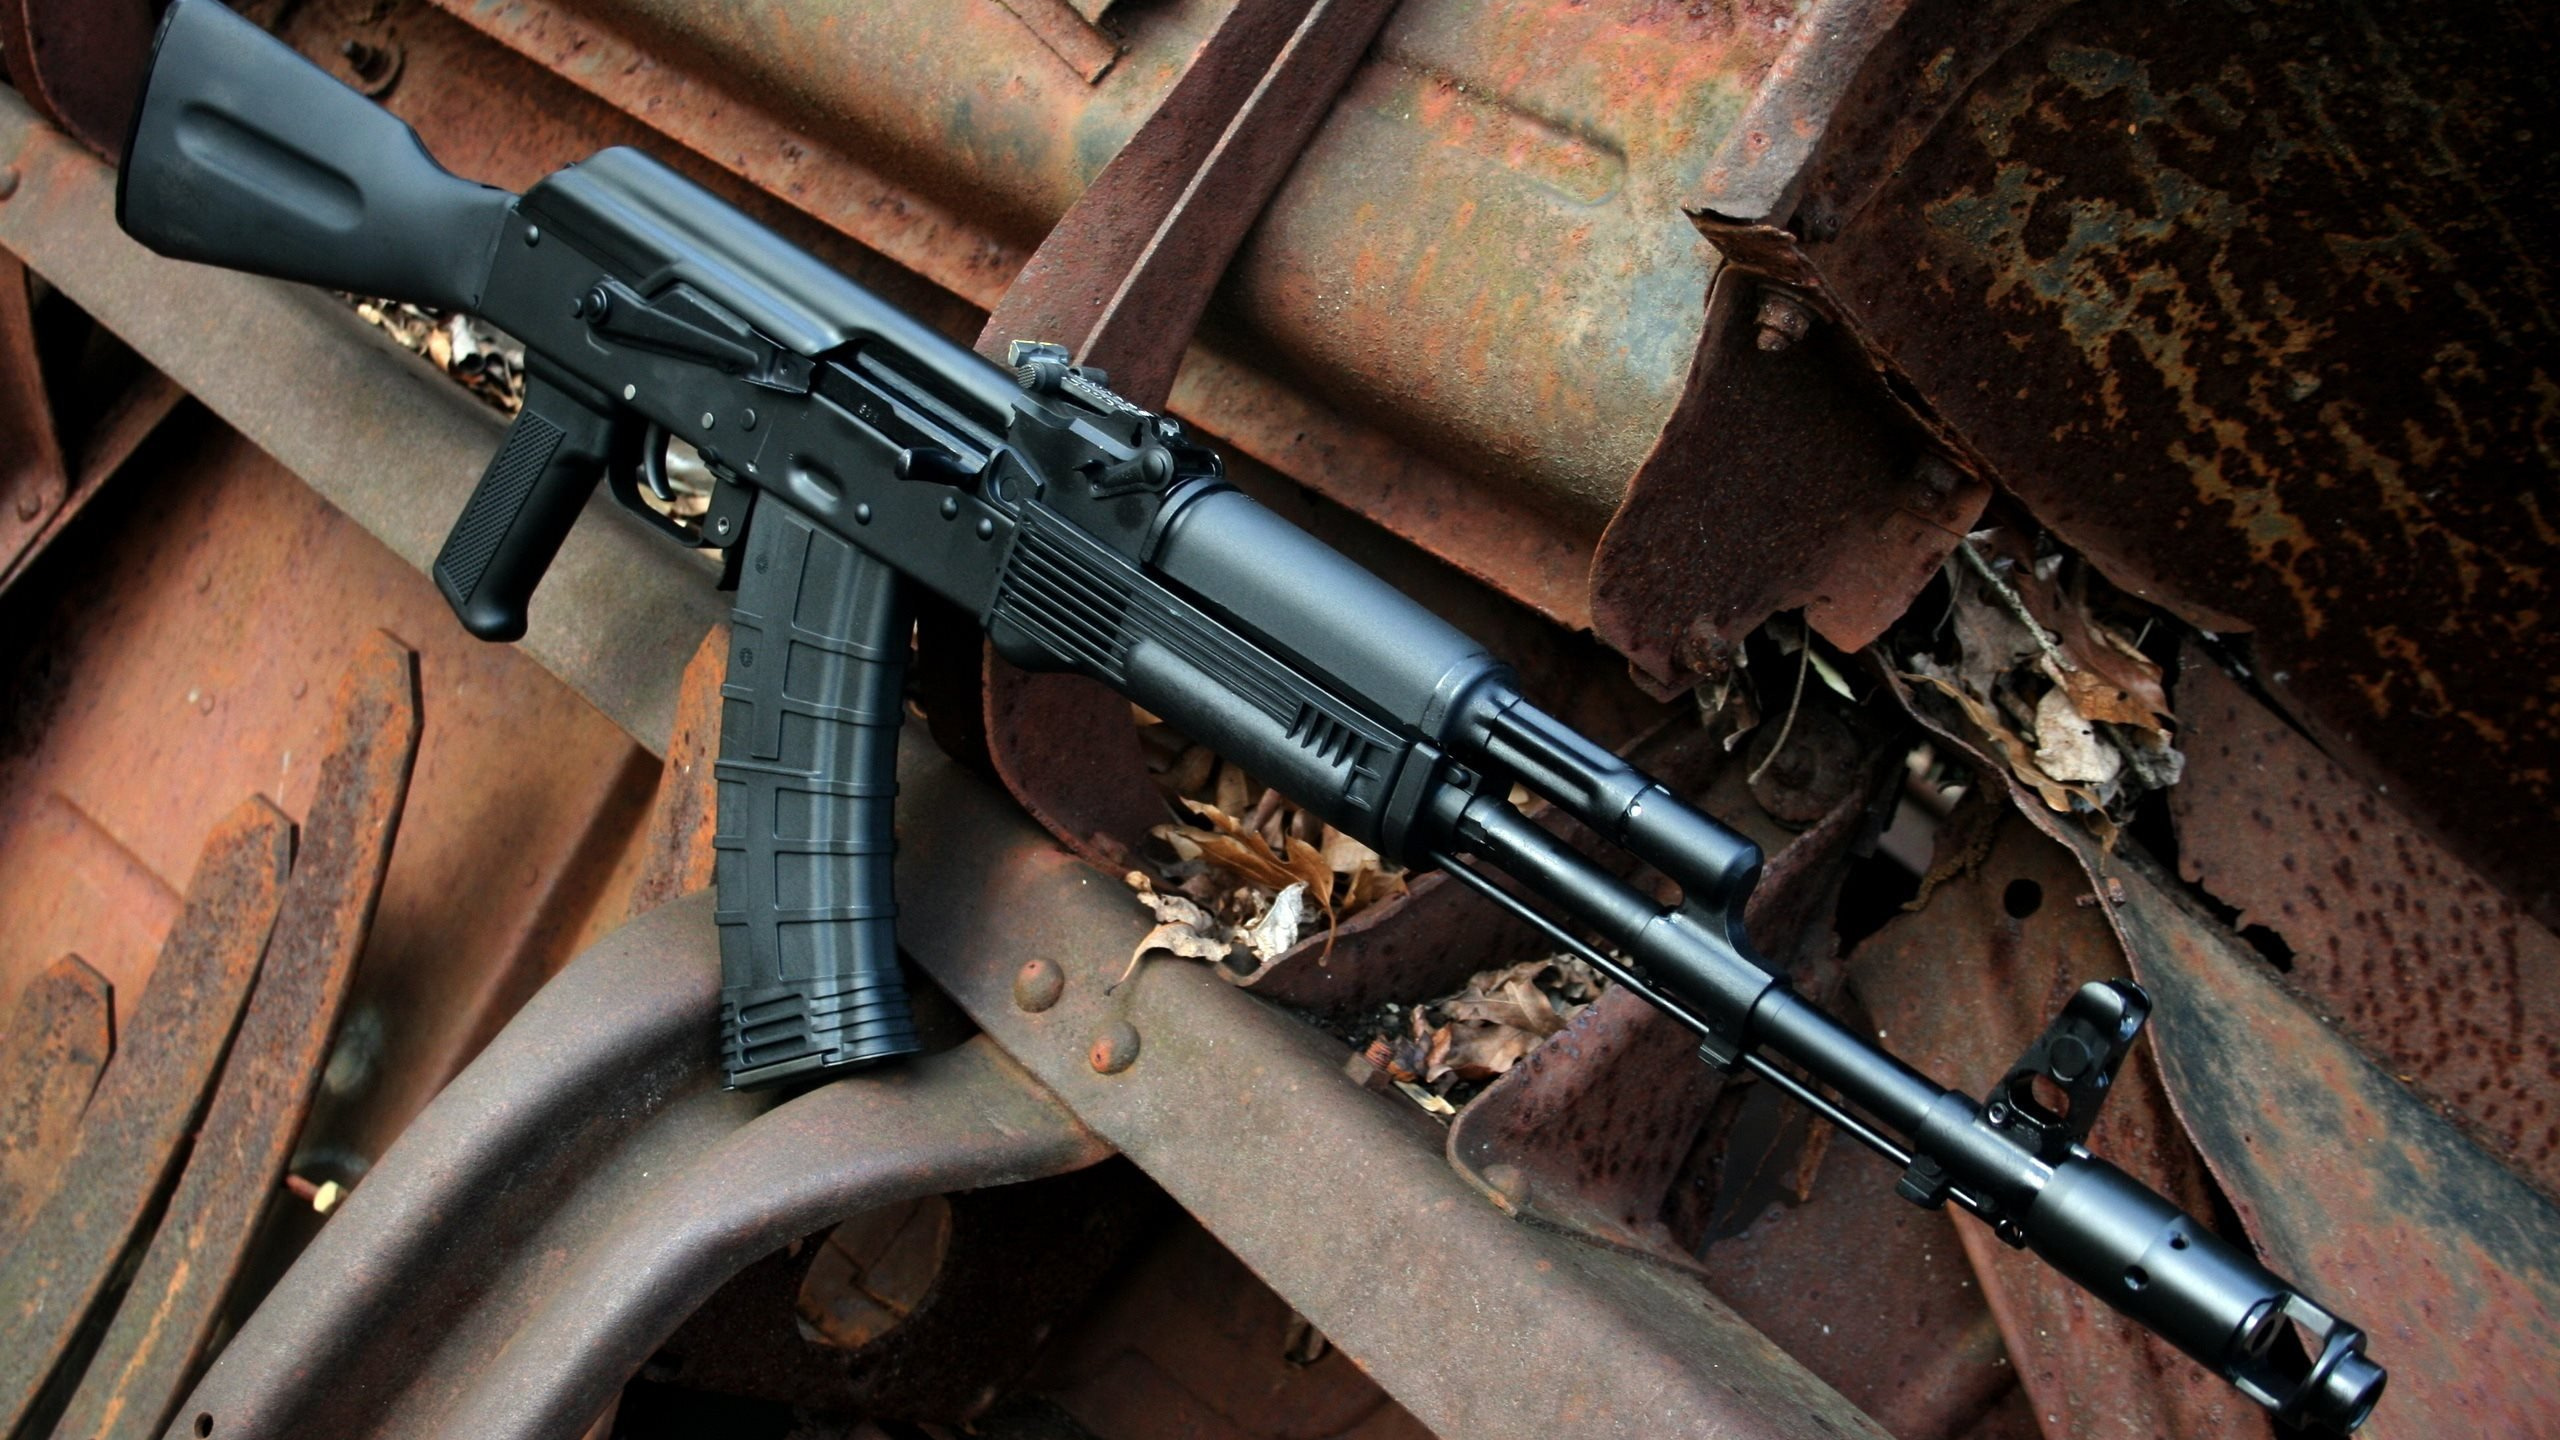 Ak-74, Feuerwaffe, Gewehr, Trigger, Luftgewehr. Wallpaper in 2560x1440 Resolution